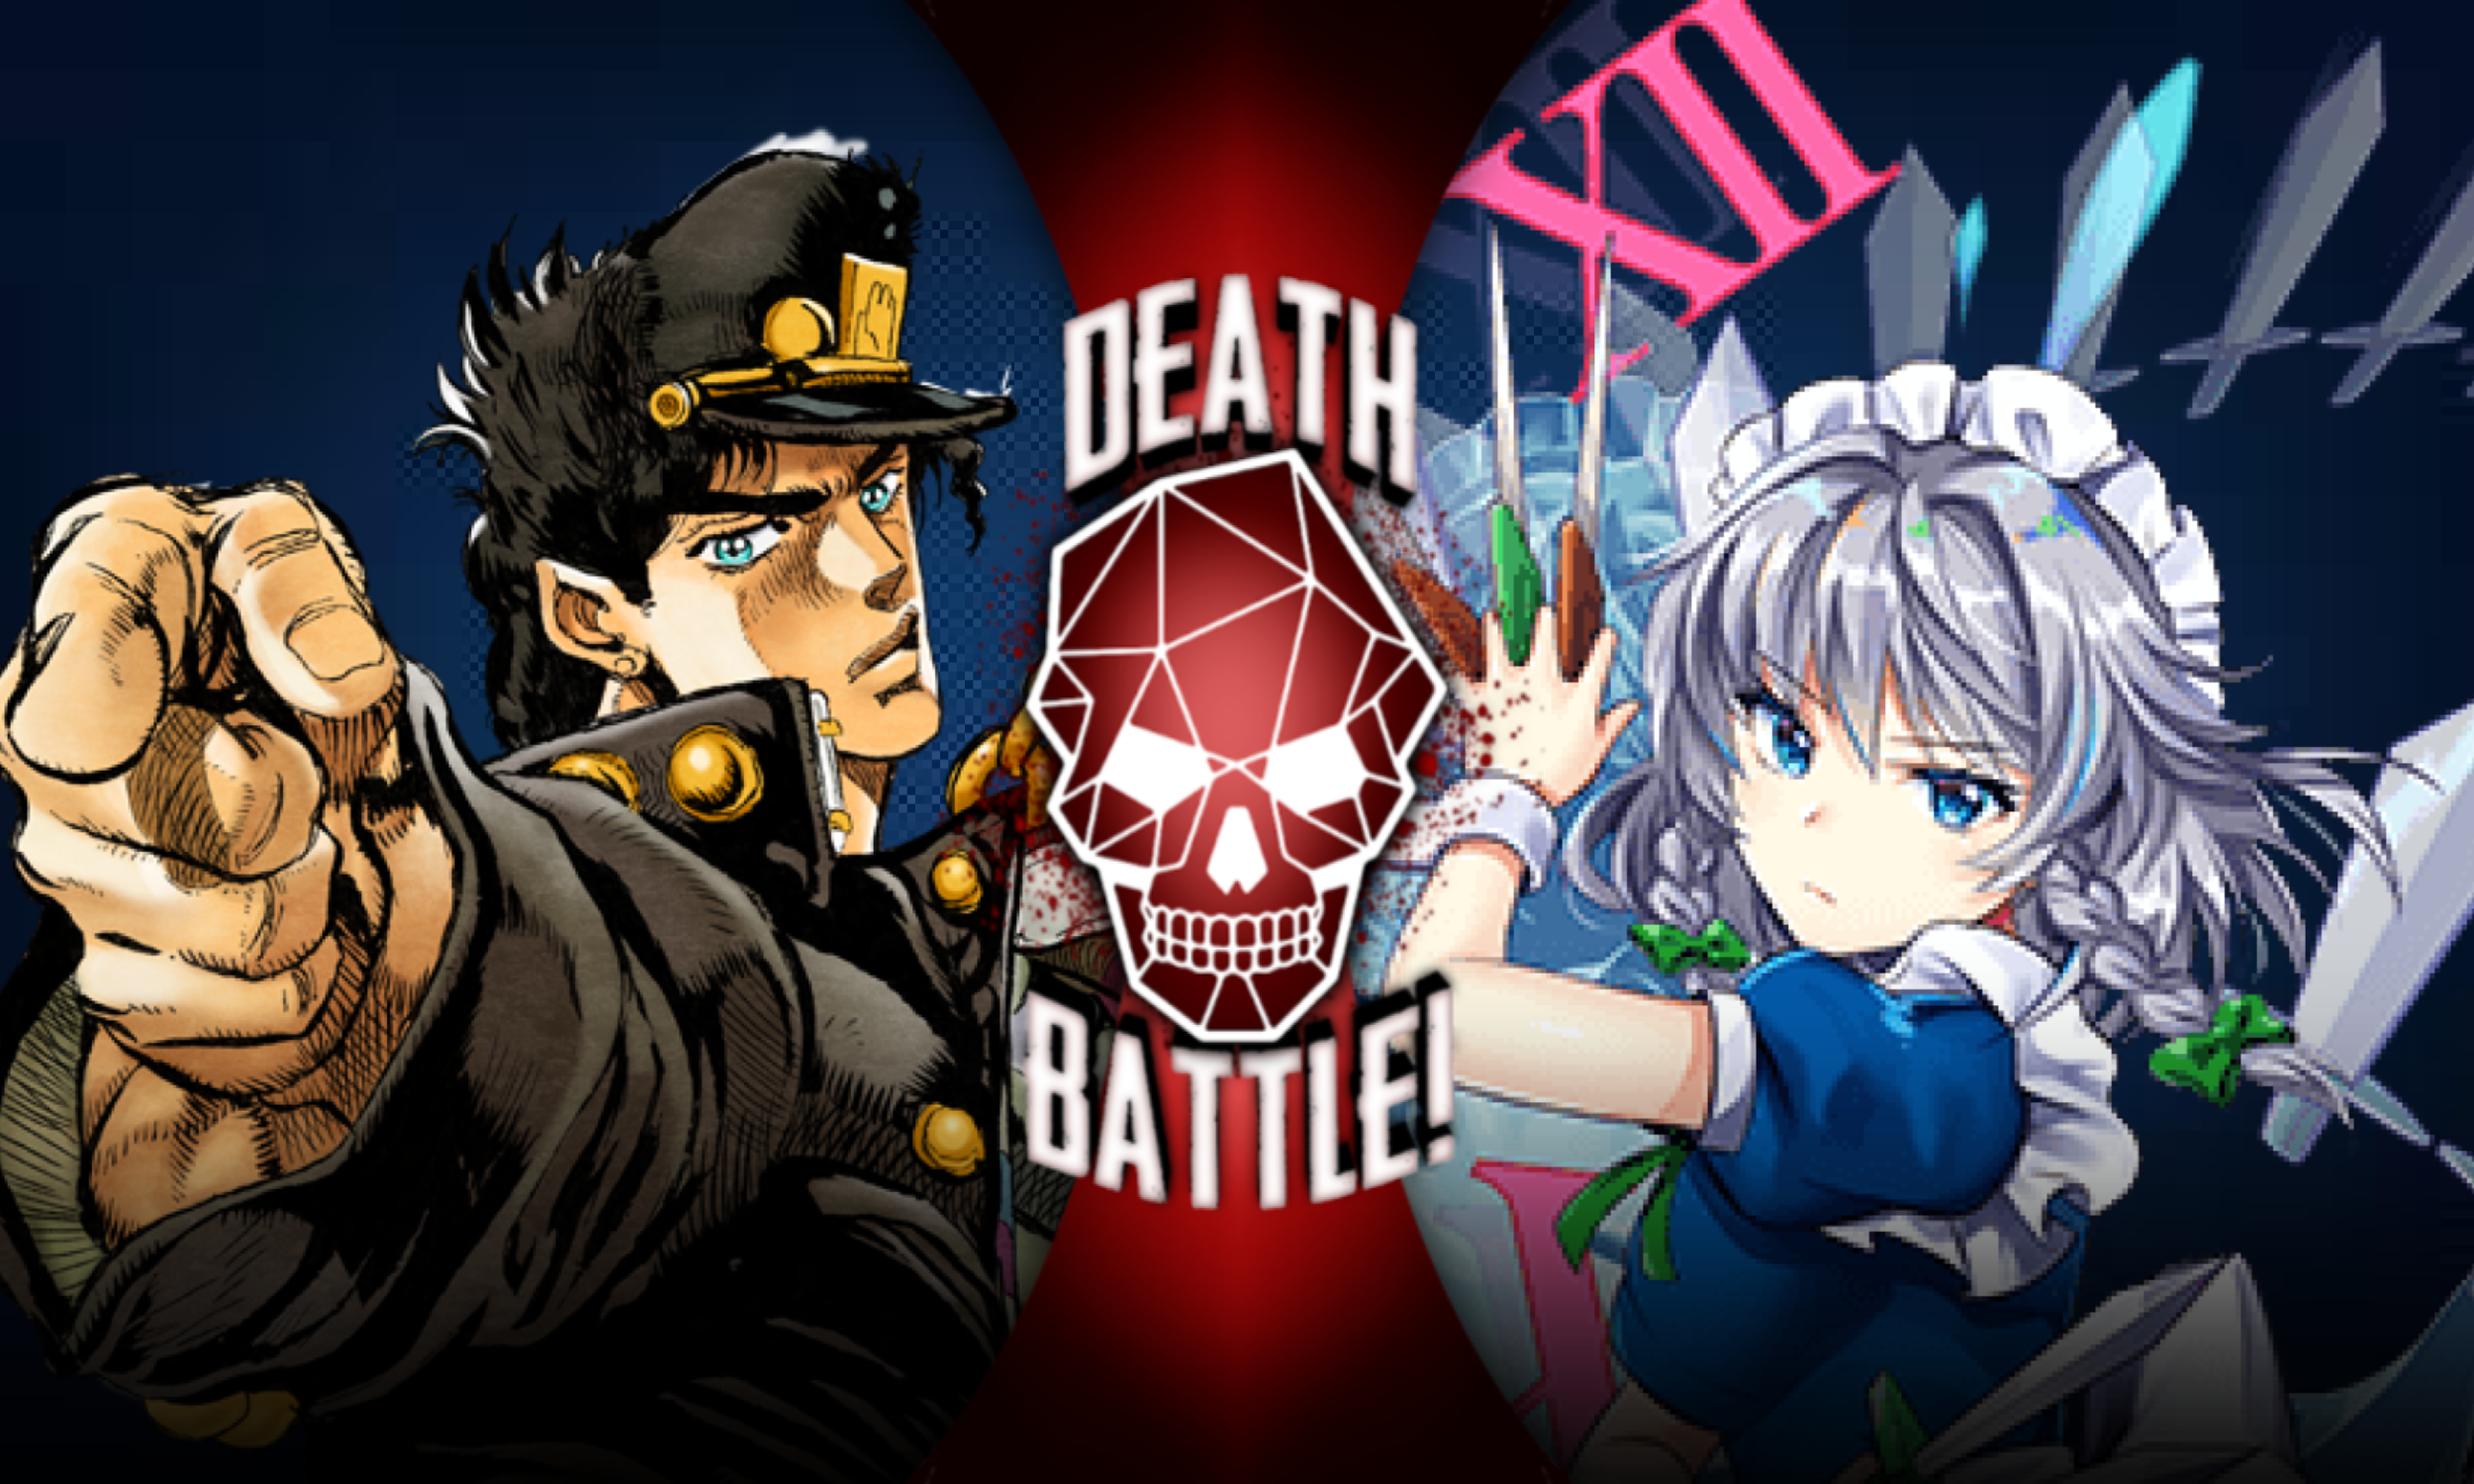 Jotaro Kujo, Death Battle Fanon Wiki